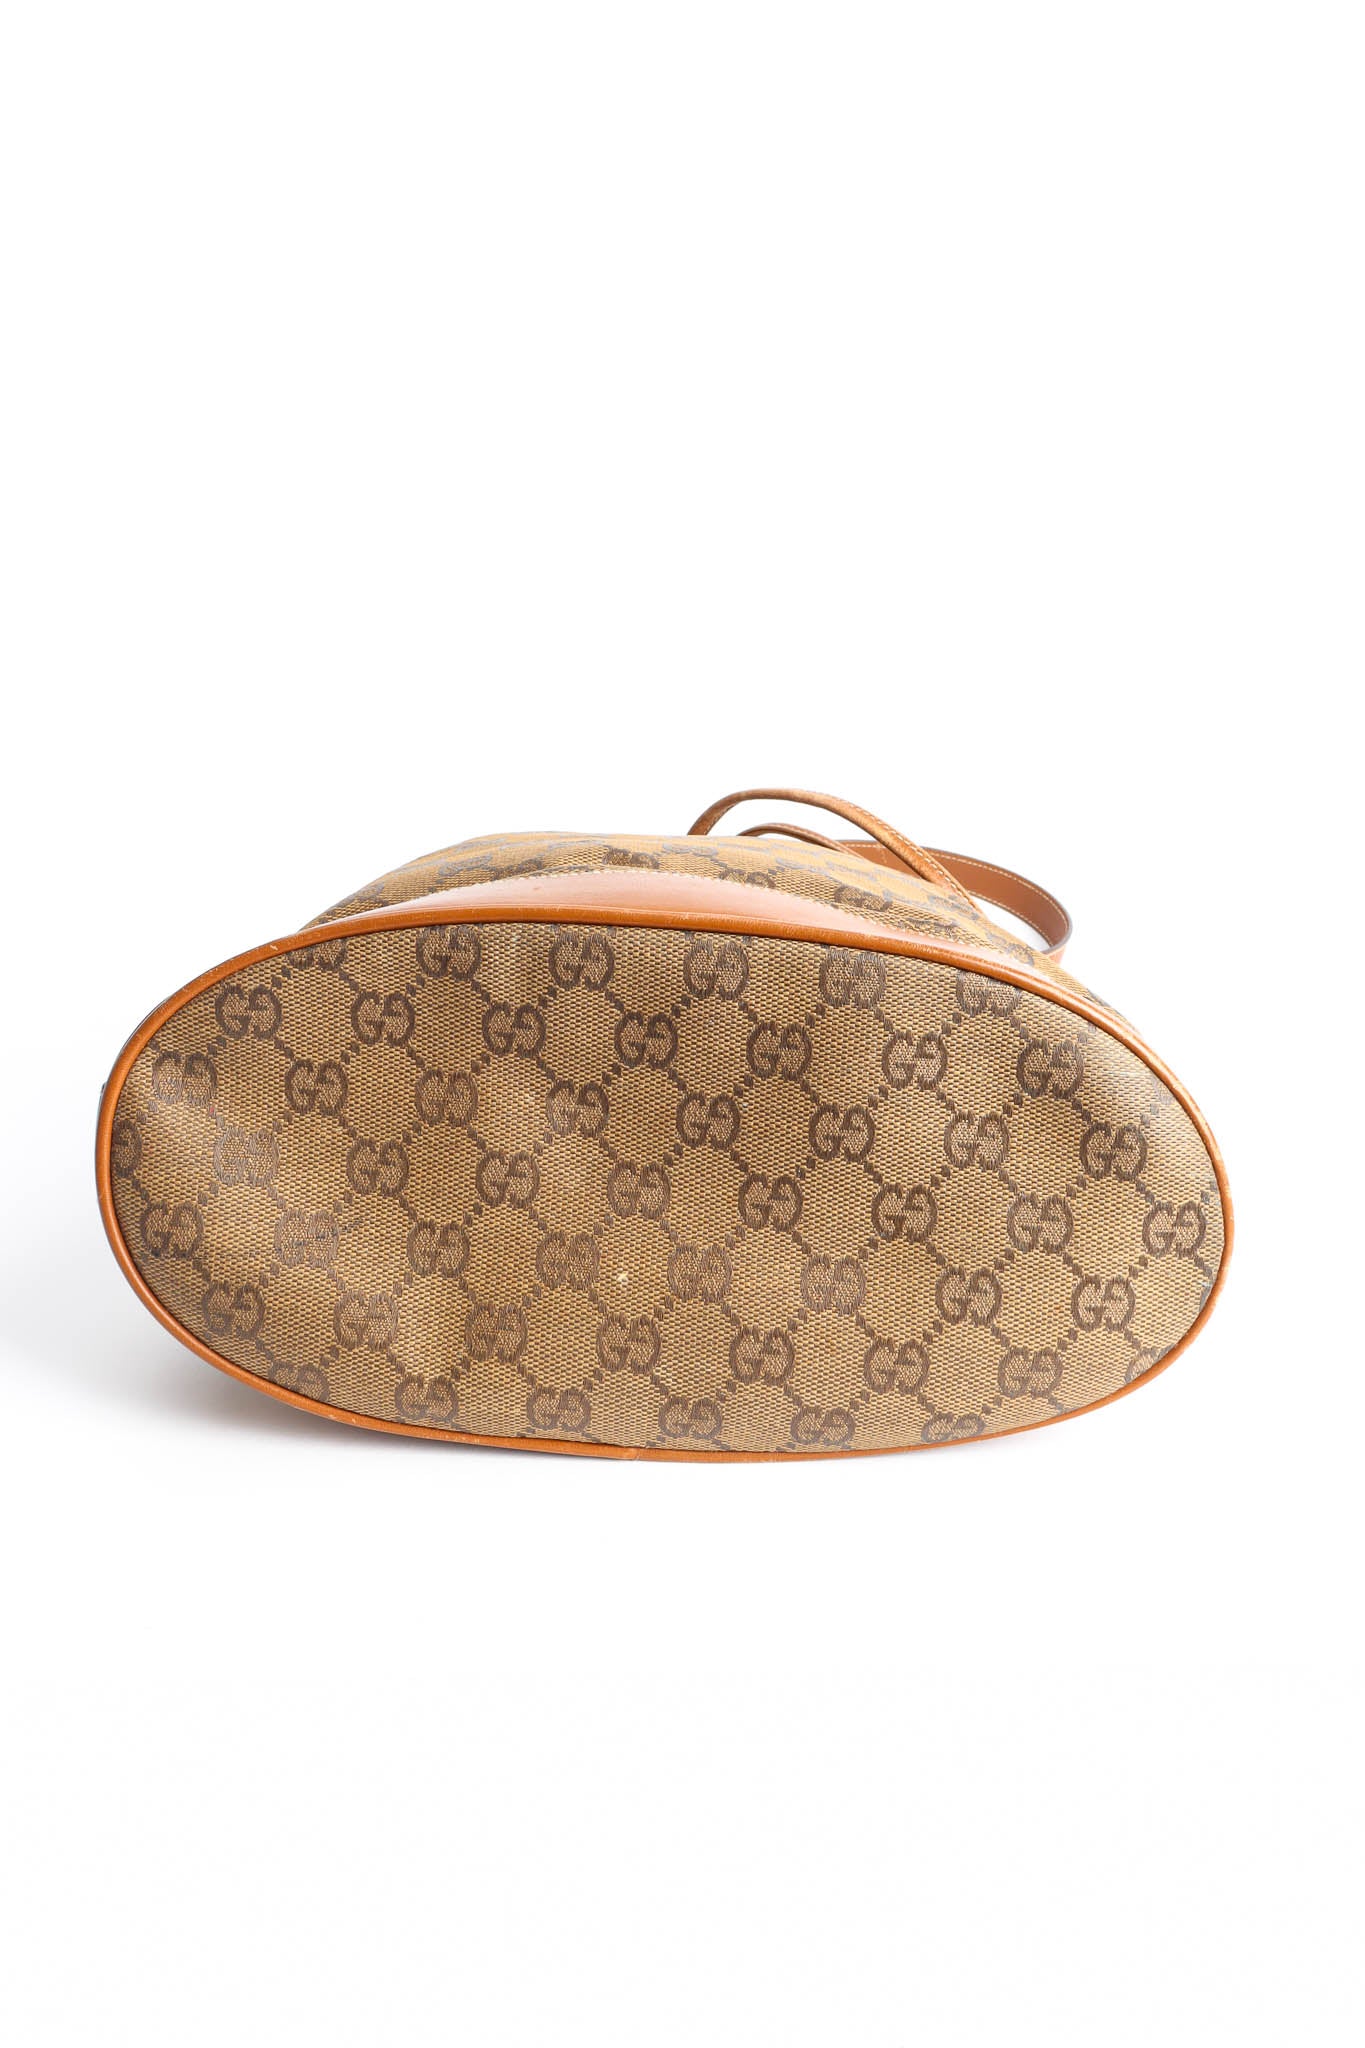 Vintage Gucci GG Monogram Bucket Bag overall base @ Recess LA